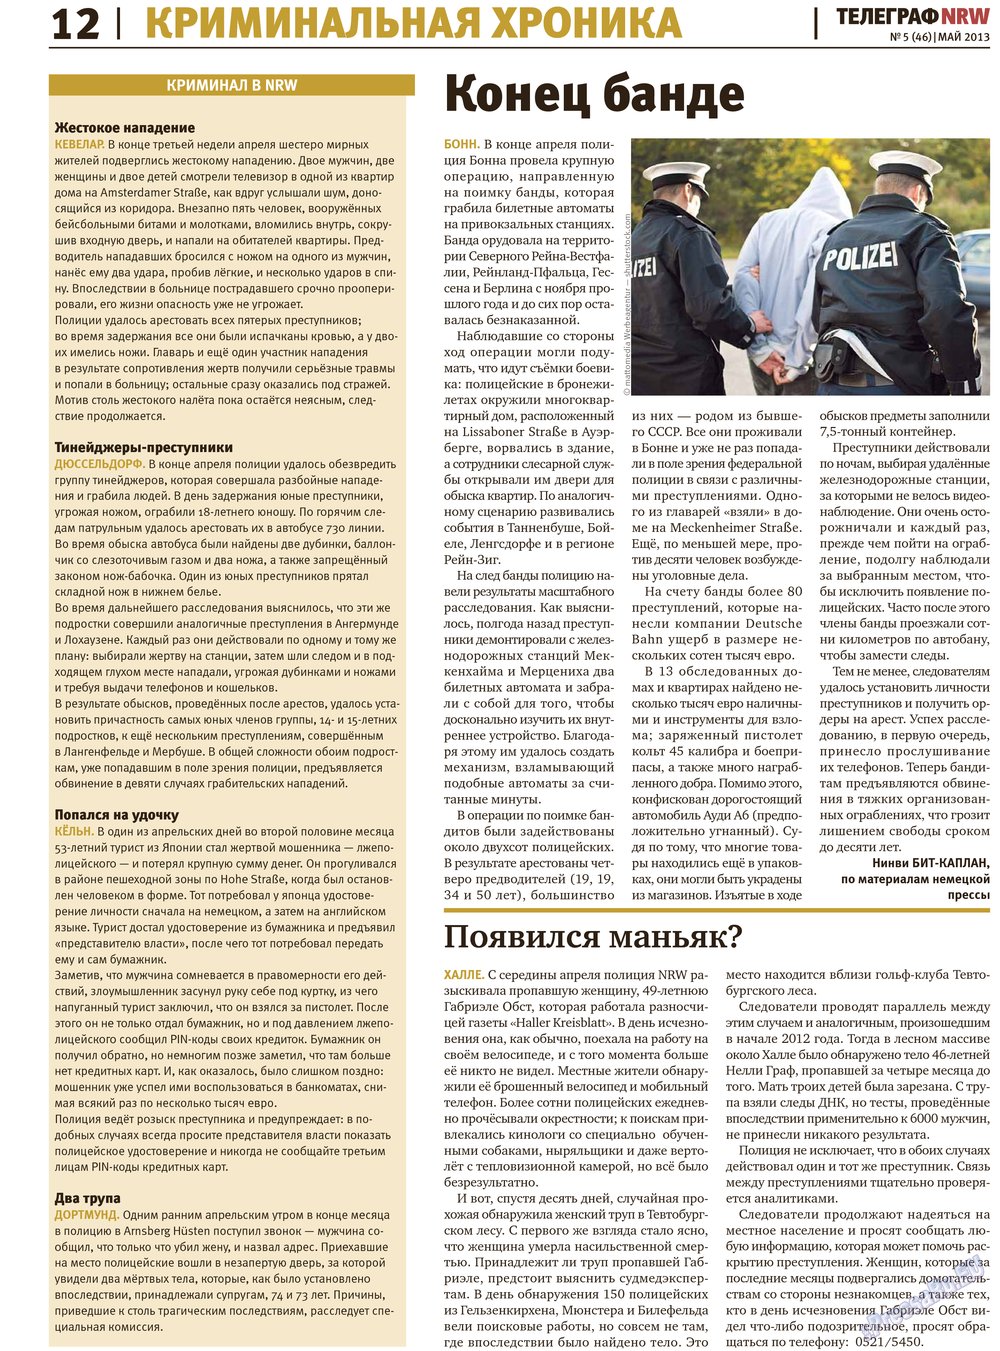 Телеграф NRW (газета). 2013 год, номер 5, стр. 12